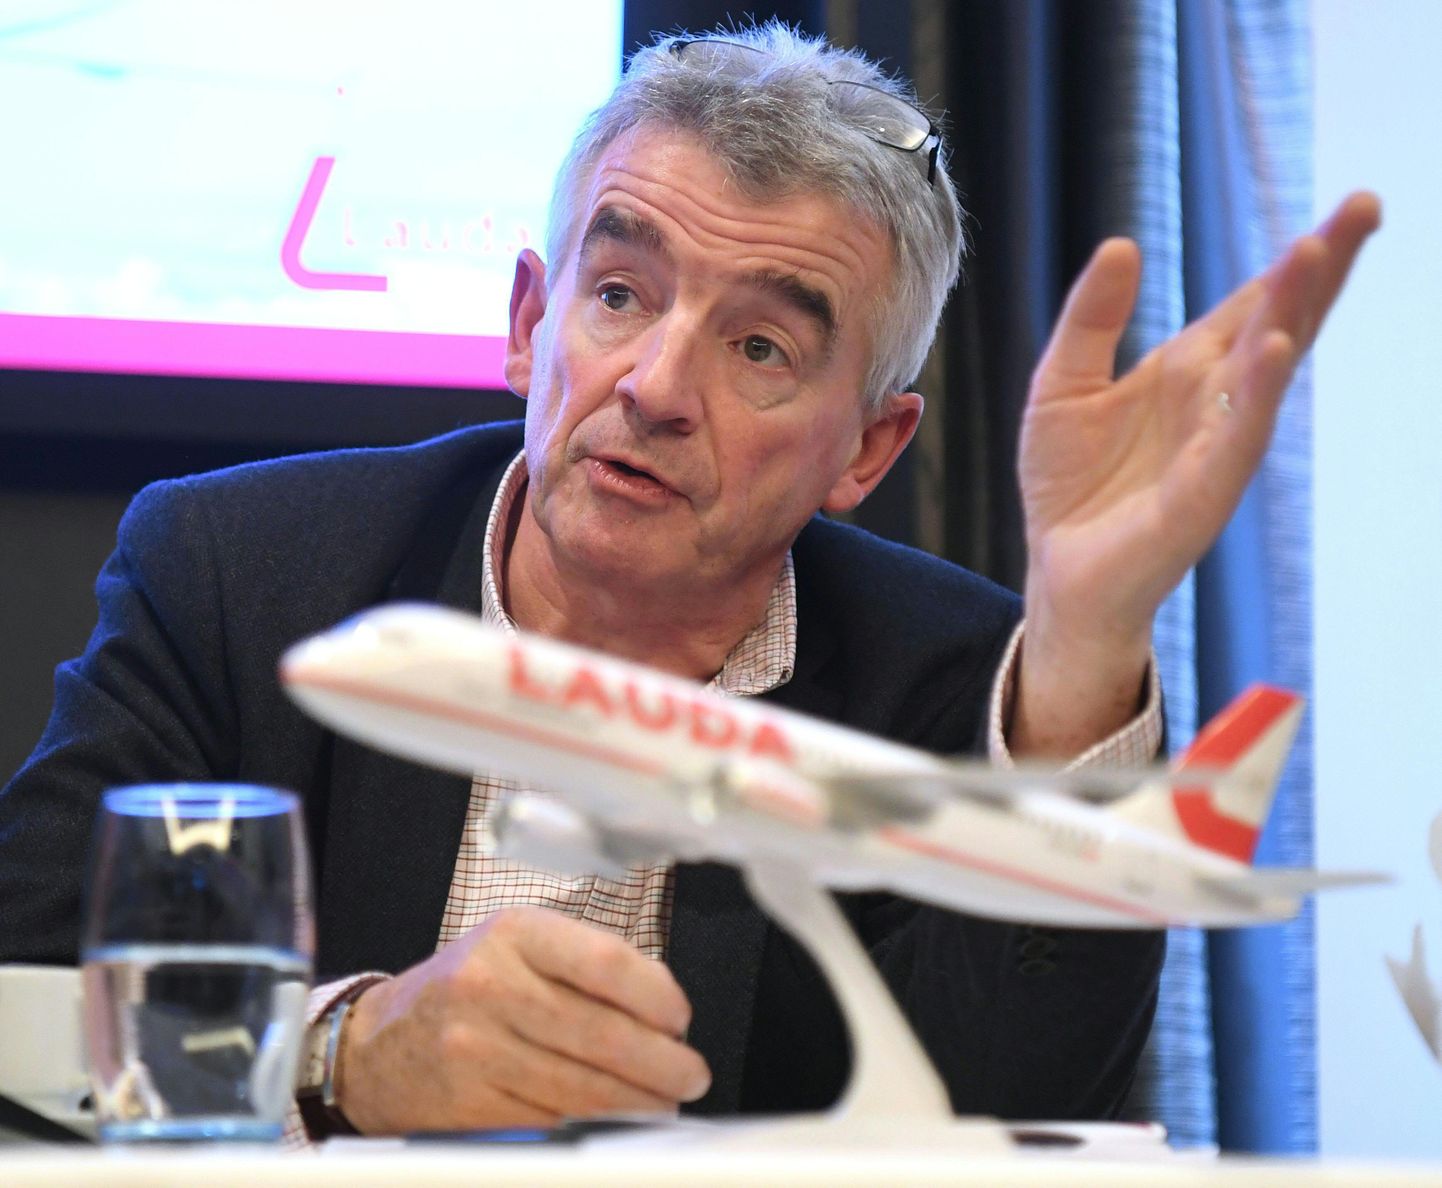 Ryanairi juht Michael O'Leary andis koos Austria lennufirmaga Lauda pressikonverentsi, kus tutvustasid uusi plaane ja liine.